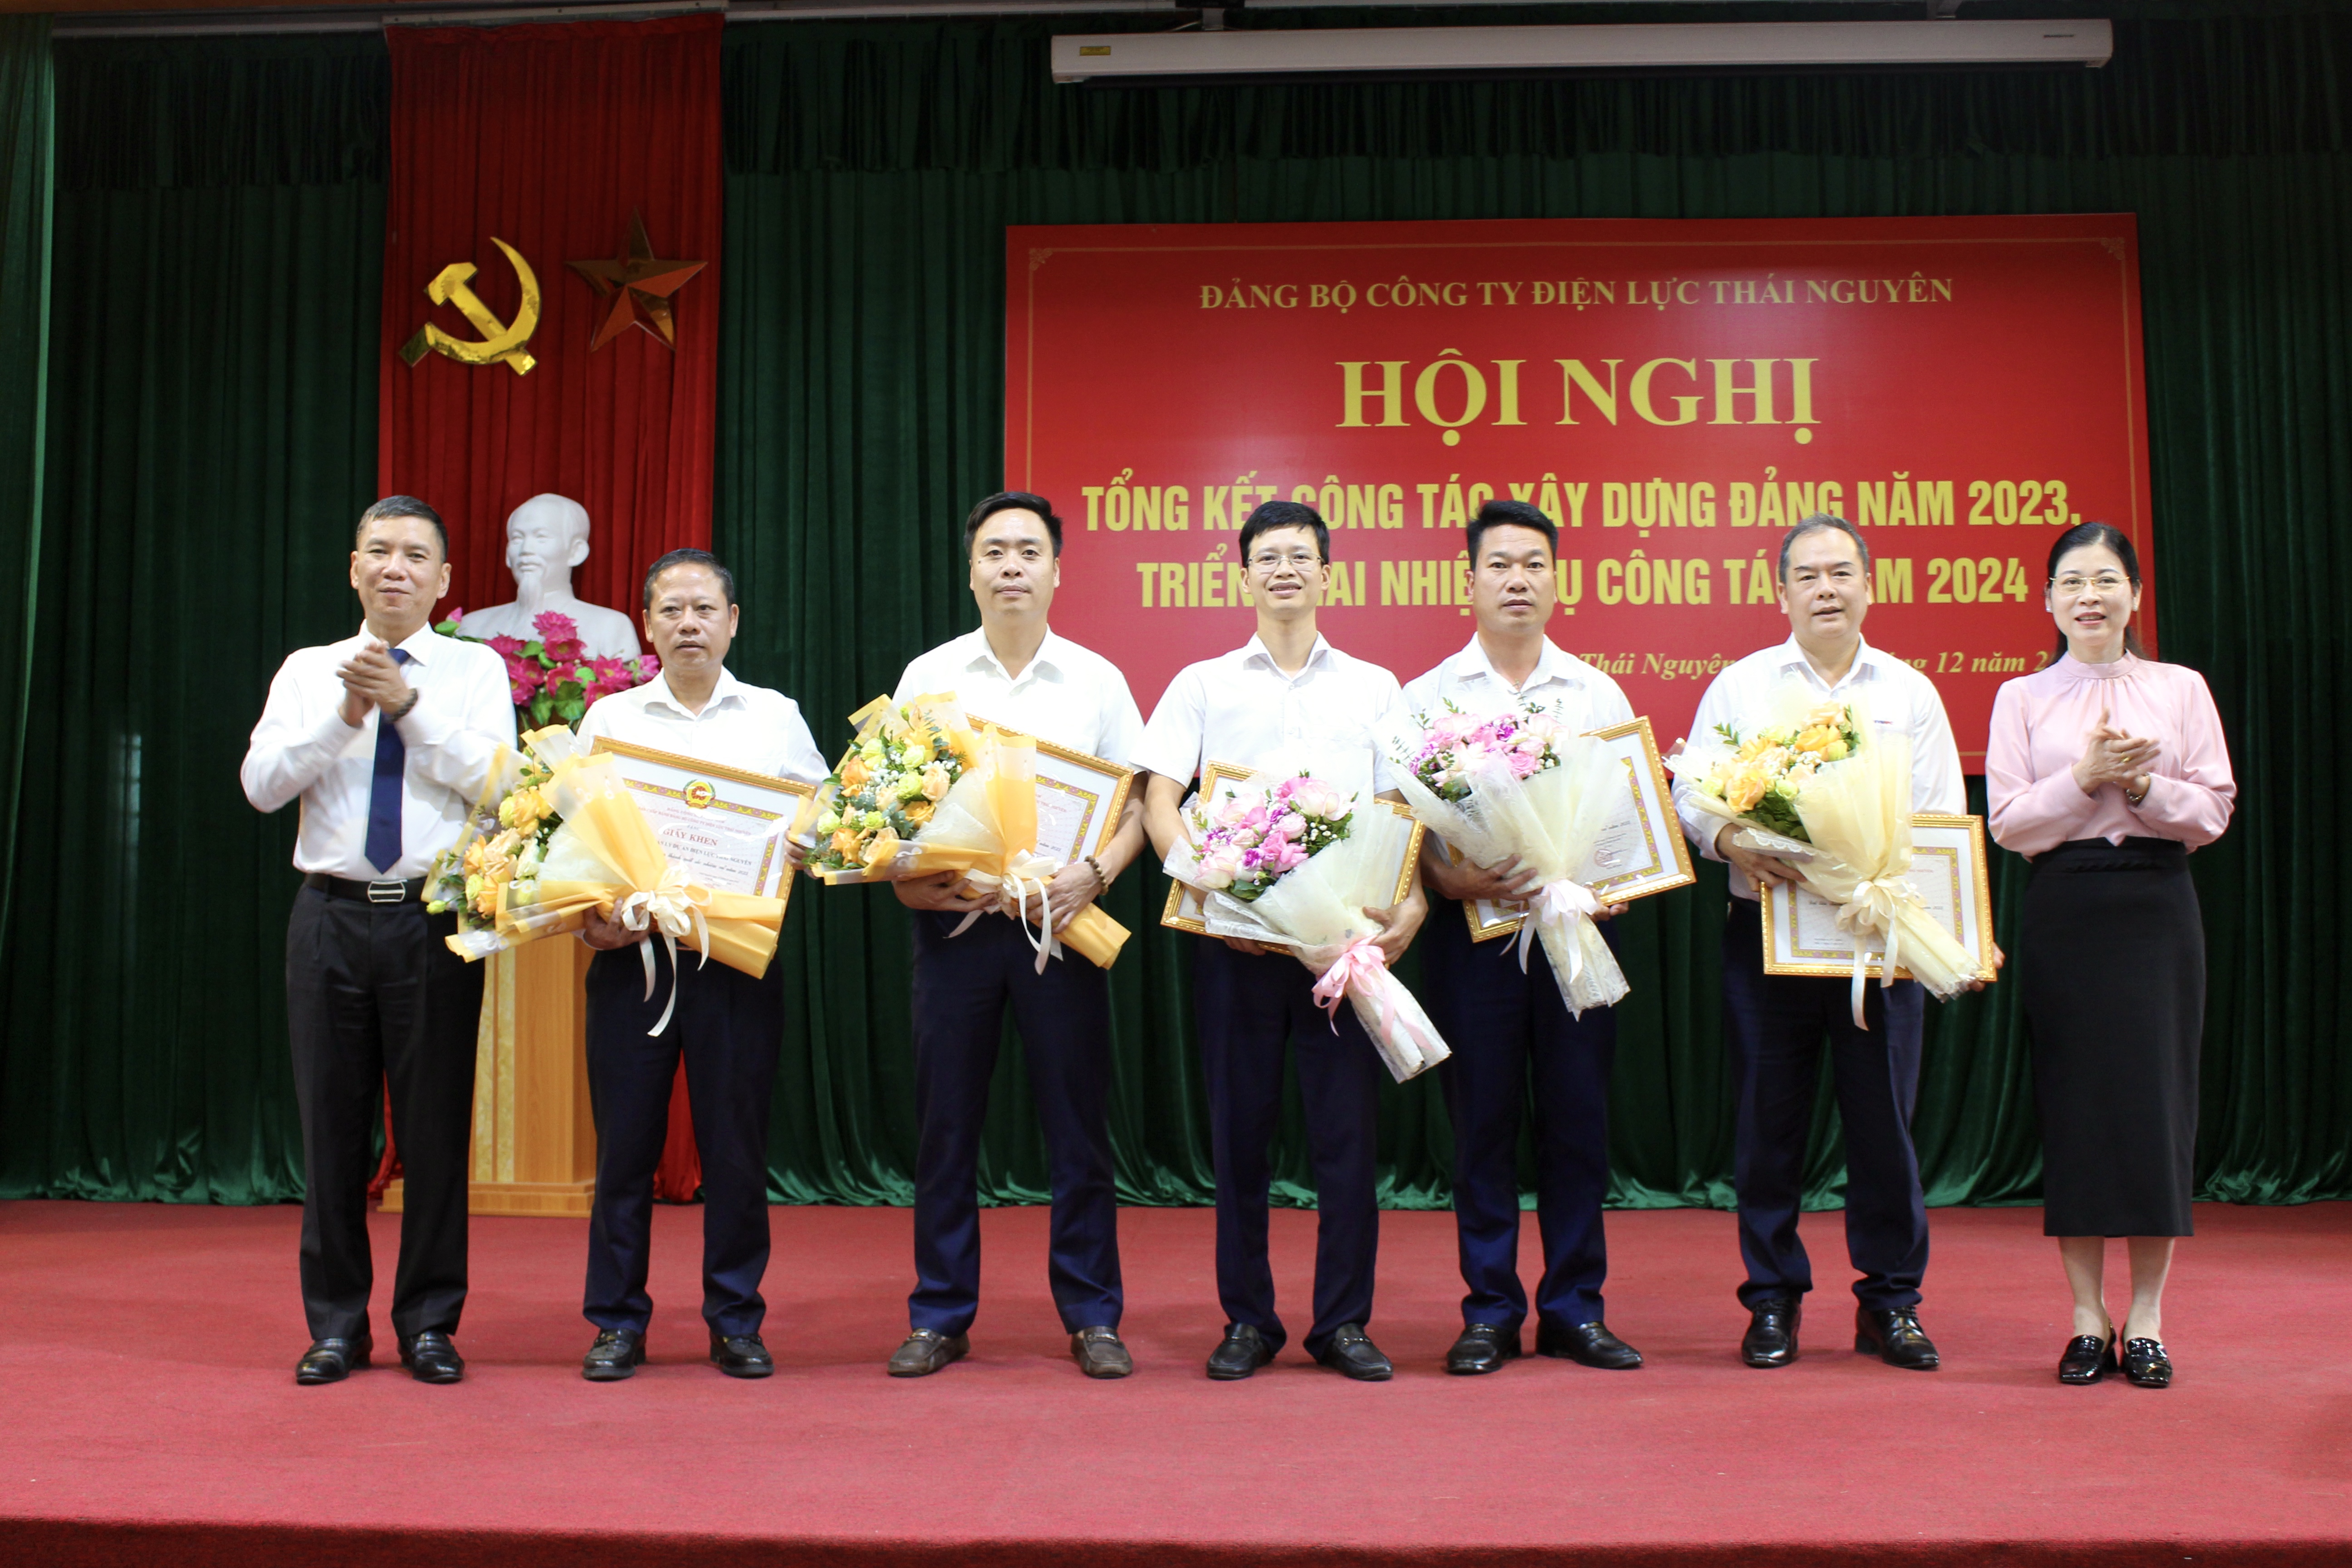 Hội nghị tổng kết công tác xây dựng Đảng năm 2023, triển khai nhiệm vụ công tác năm 2024 Đảng bộ Công ty Điện lực Thái Nguyên 